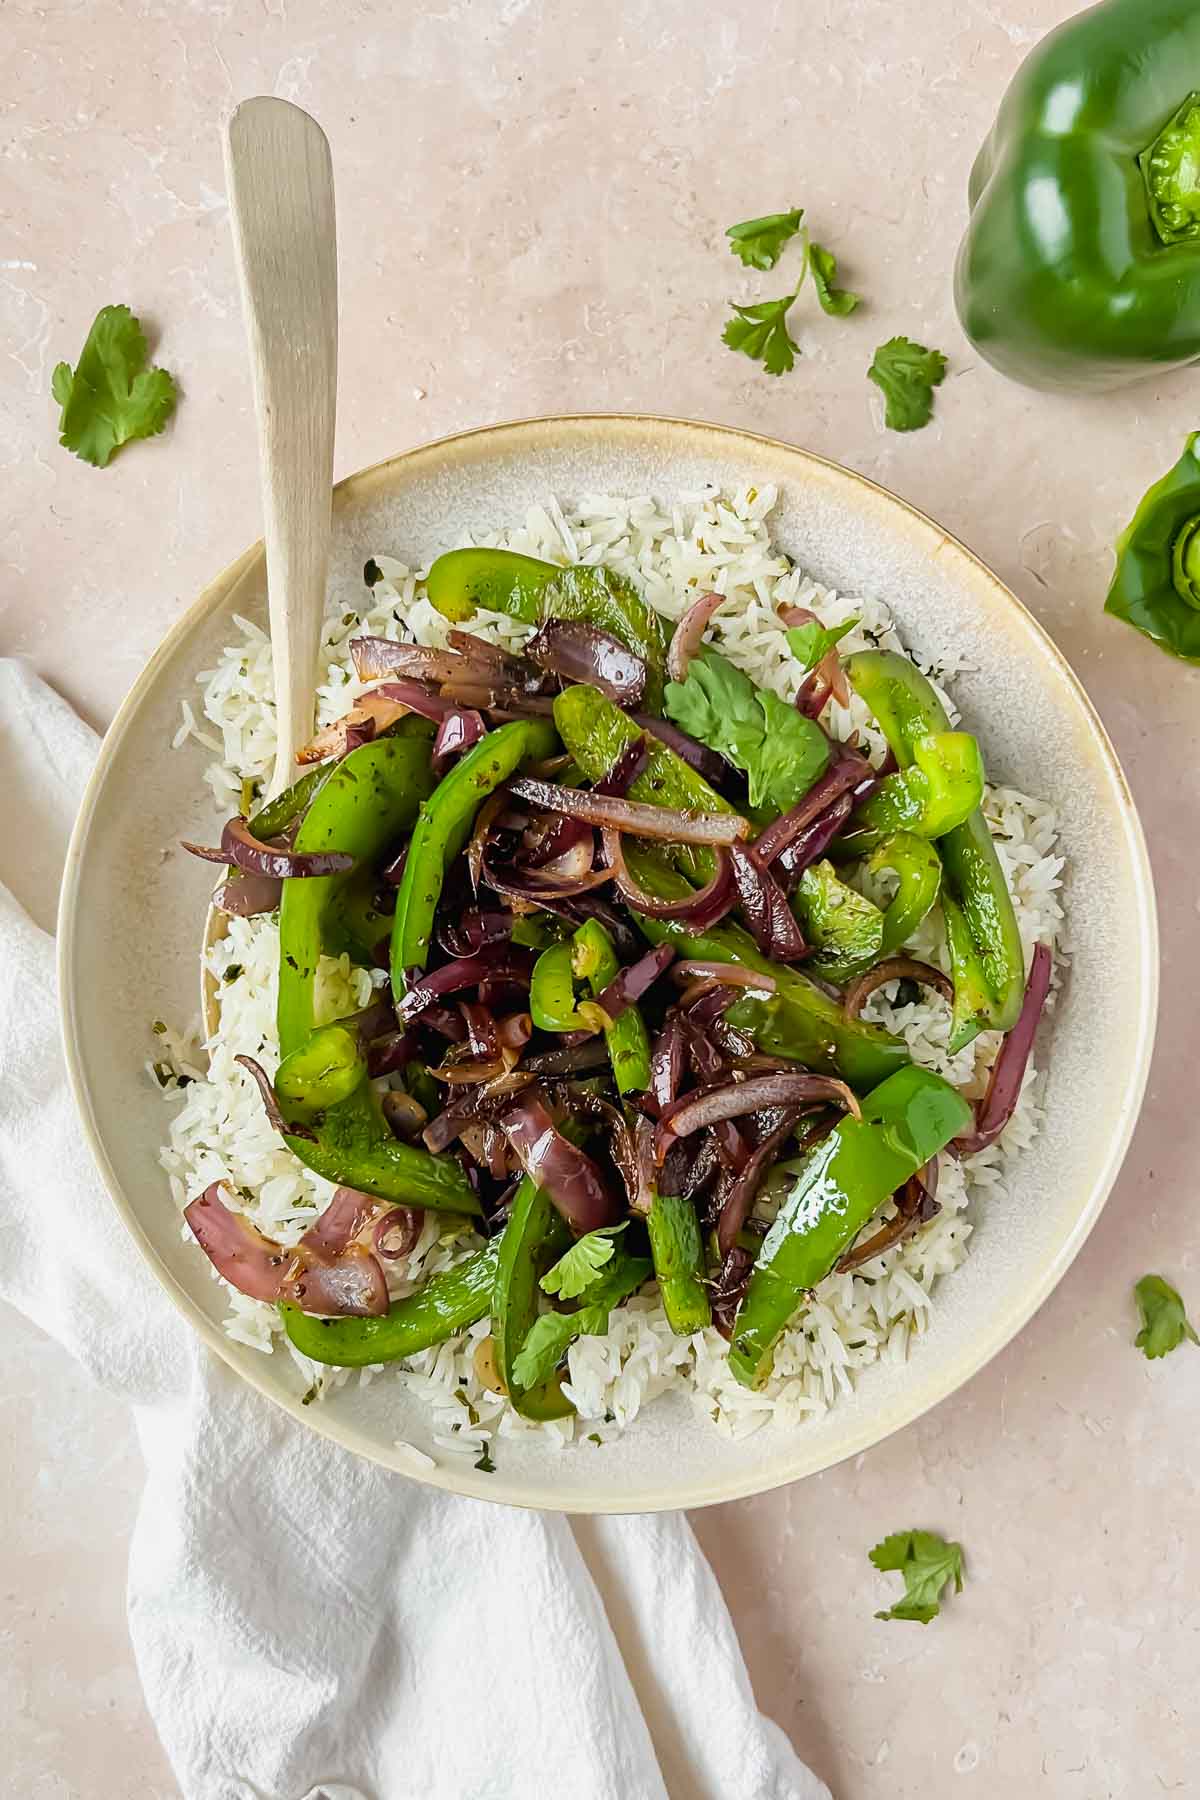 chipotle fajita veggies on top of plate of rice with spoon stuck in dish.